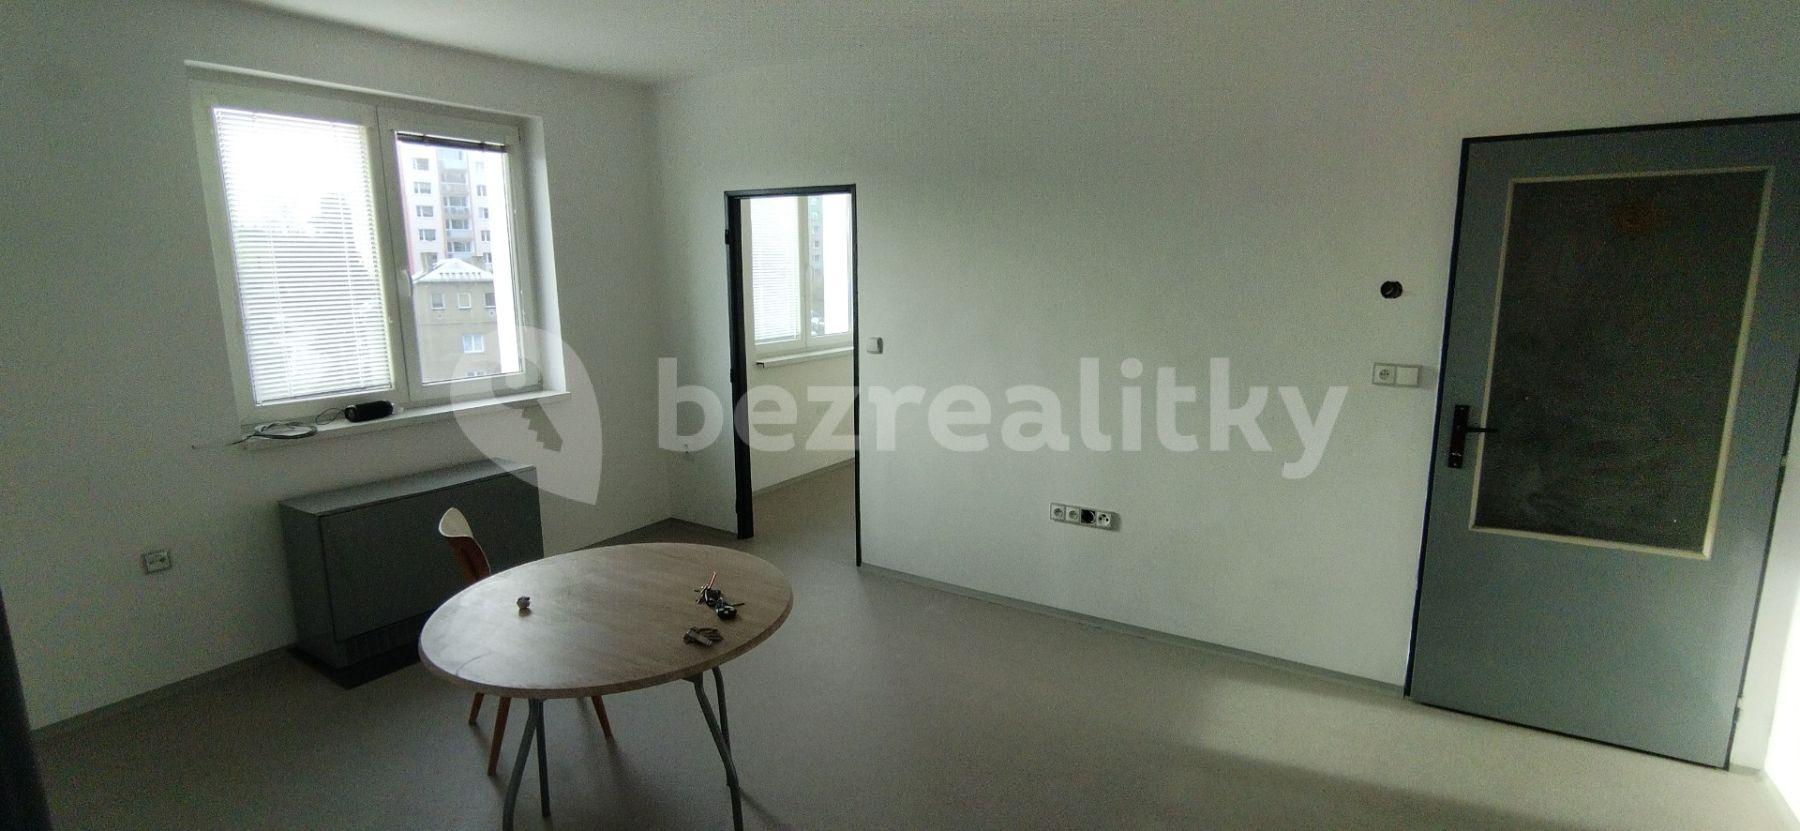 2 bedroom flat to rent, 55 m², Rumburk, Ústecký Region